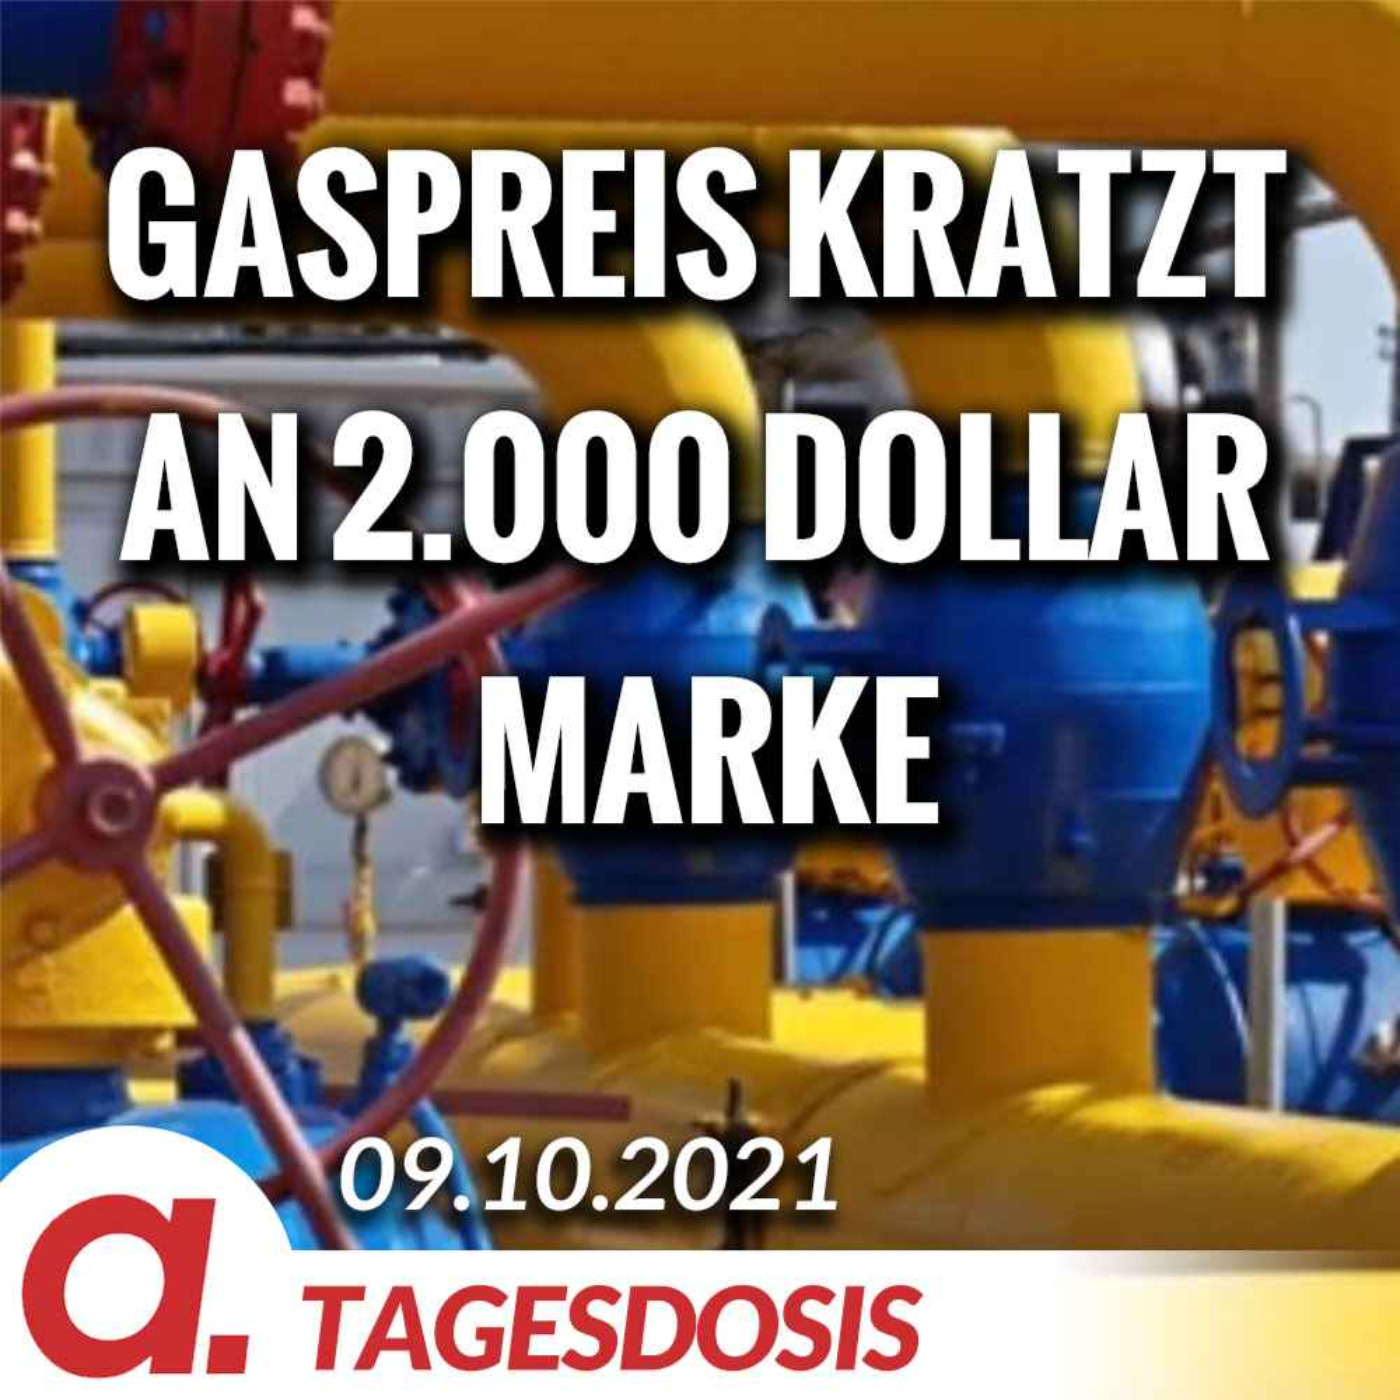 Gaspreis kratzt an der Marke von 2.000 Dollar | Von Thomas Röper